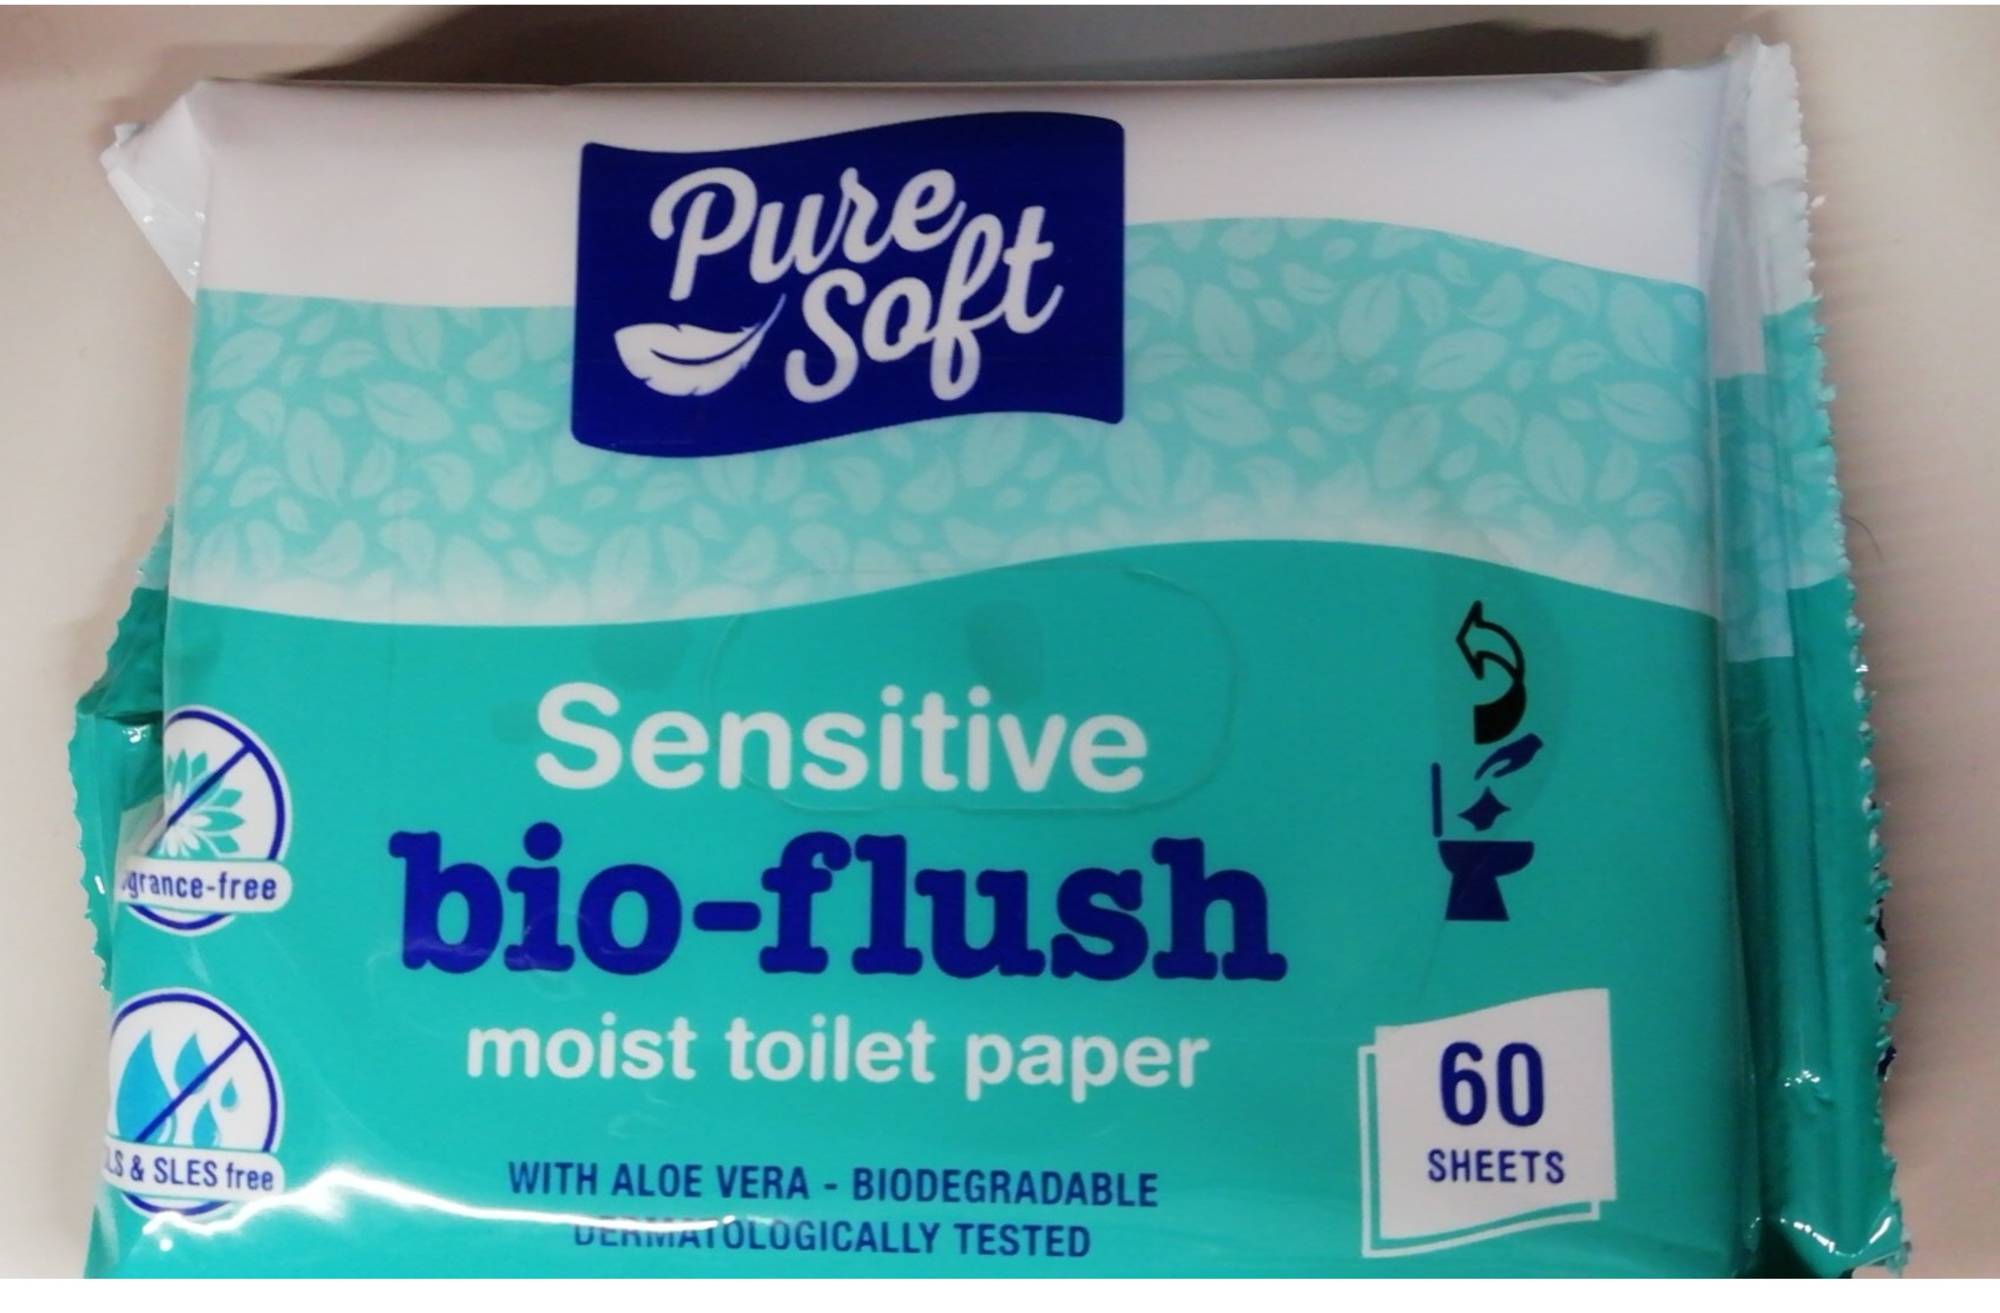 PURE SOFT - Sensitive bio-flush - Moist toilet paper